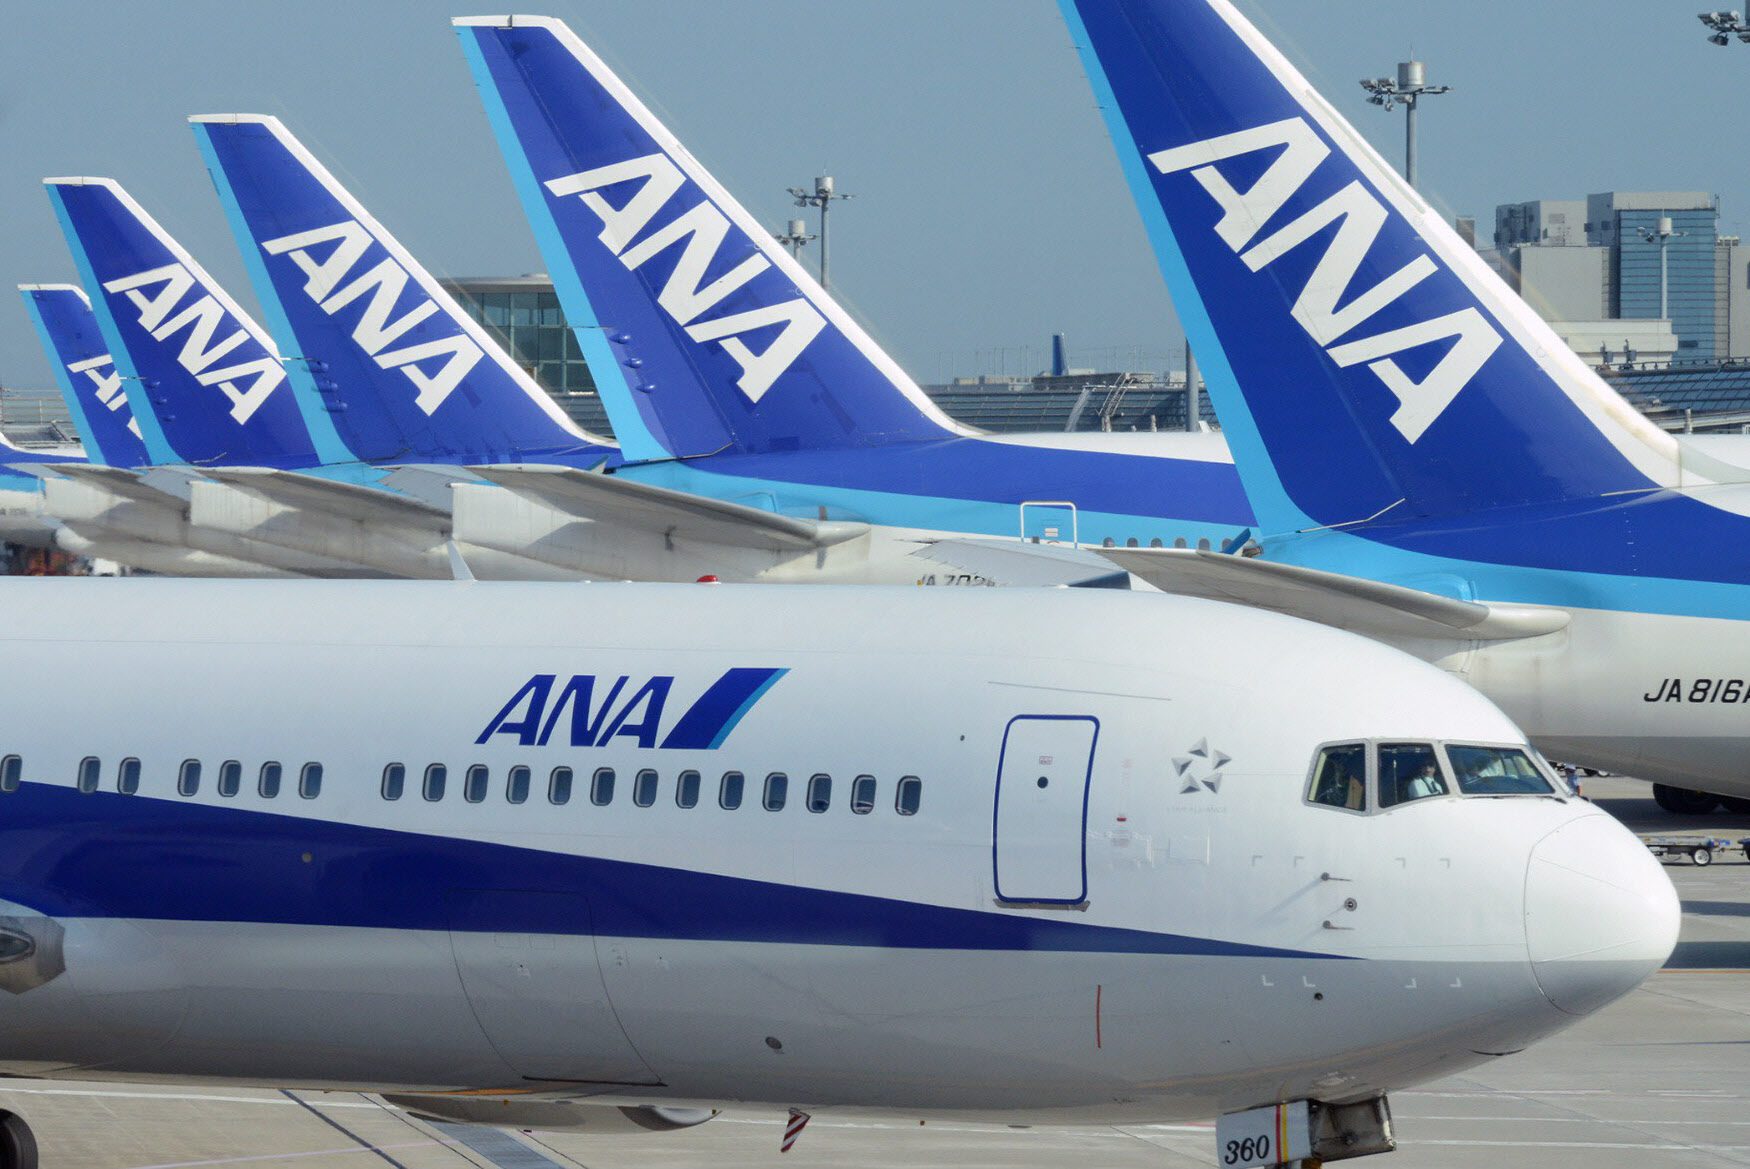 羽田空港に並ぶ全日本空輸の航空機。グループも含め、多くの人が運航を支えている